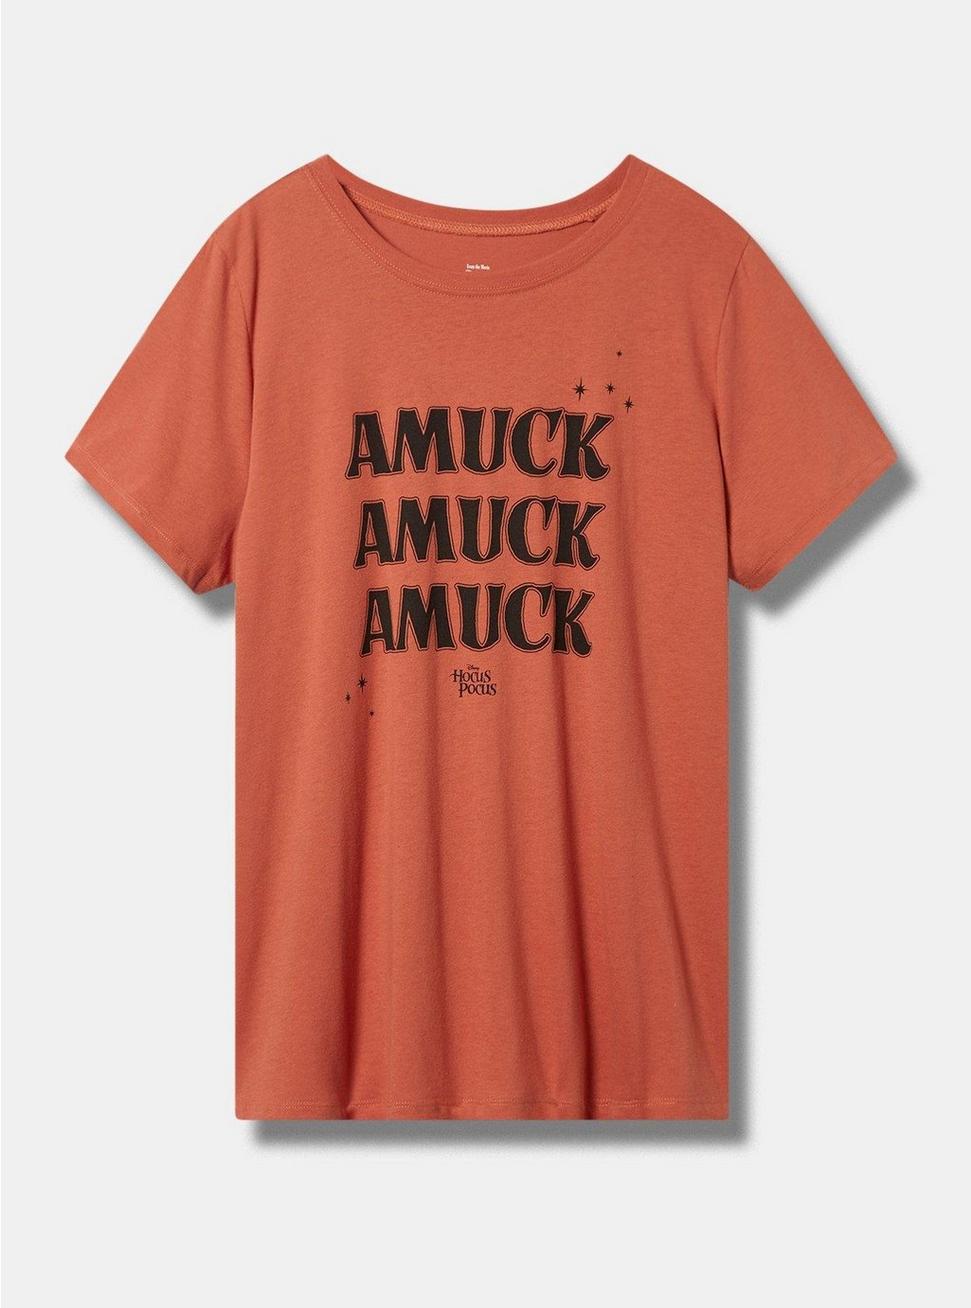 Hocus Pocus Amuck Classic Fit Cotton Crew Neck Tee, ARAGON, hi-res